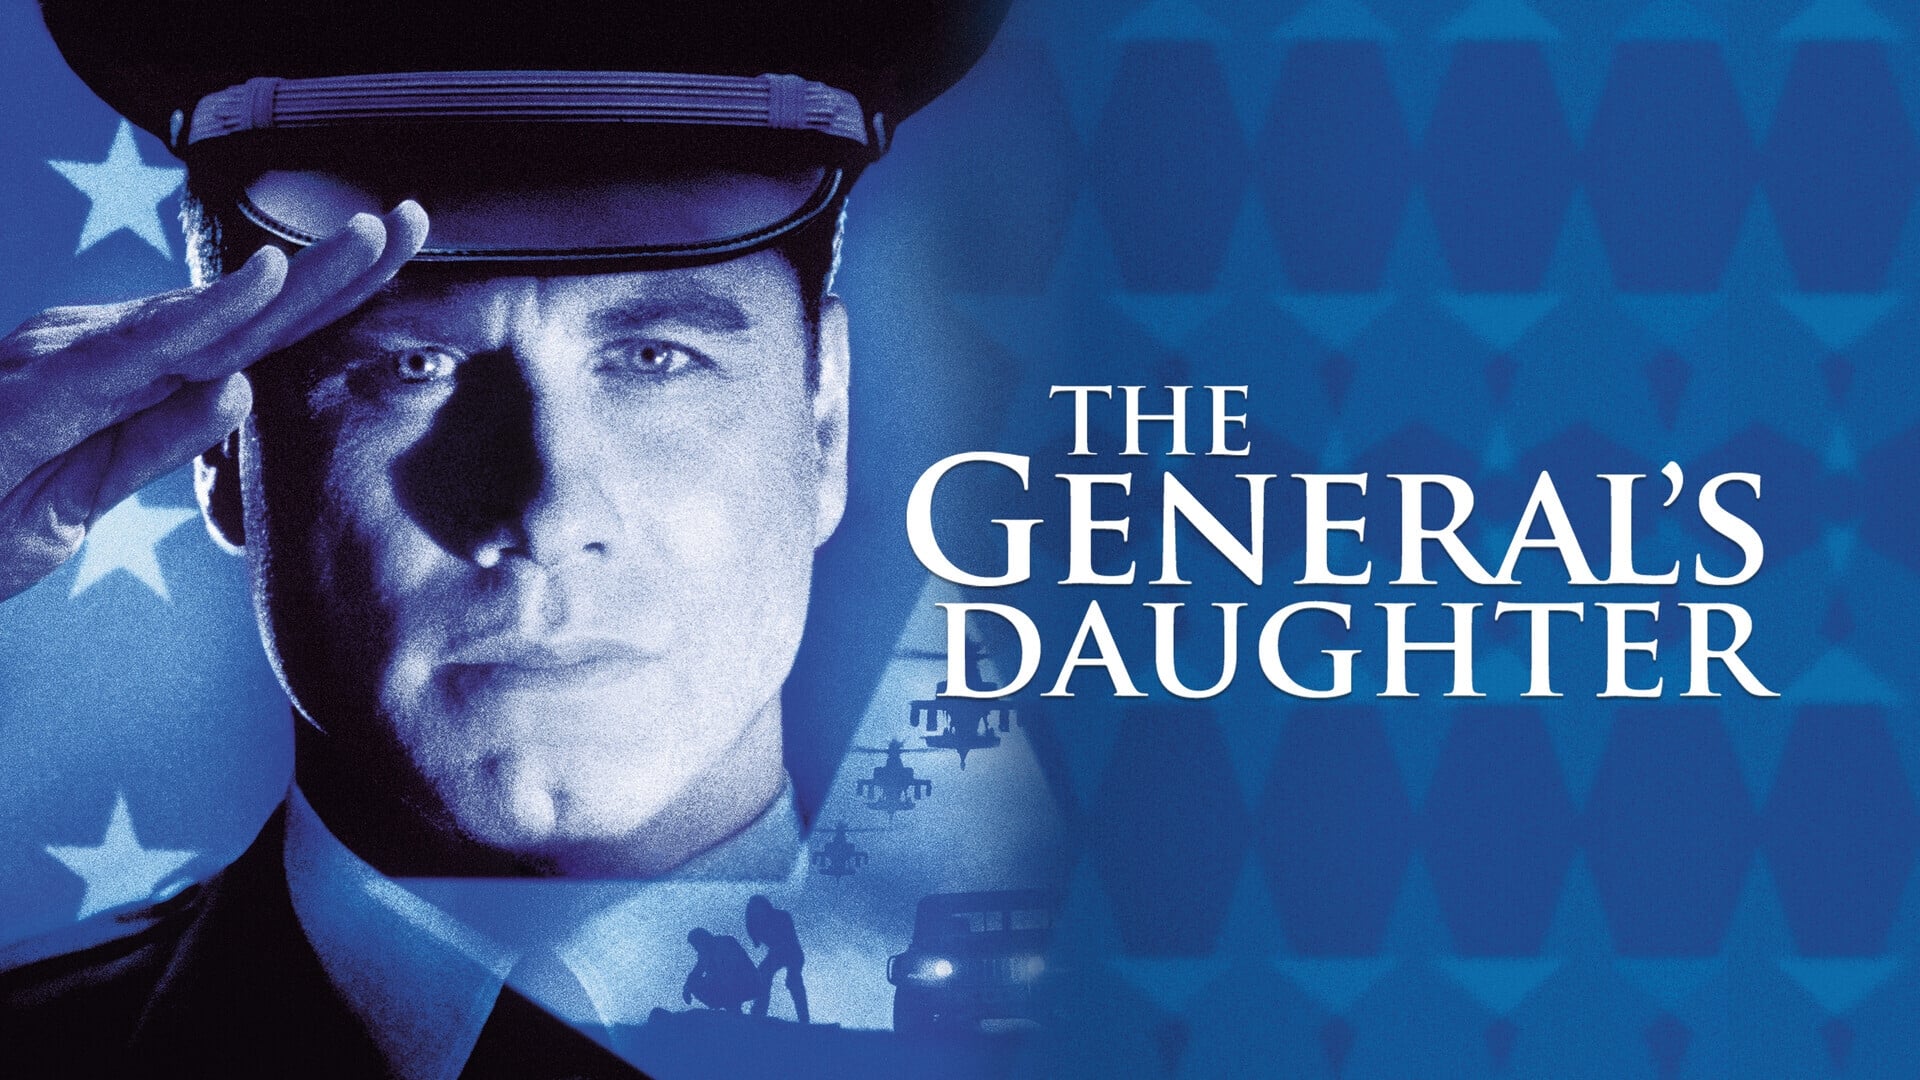 Wehrlos - Die Tochter des Generals (1999)